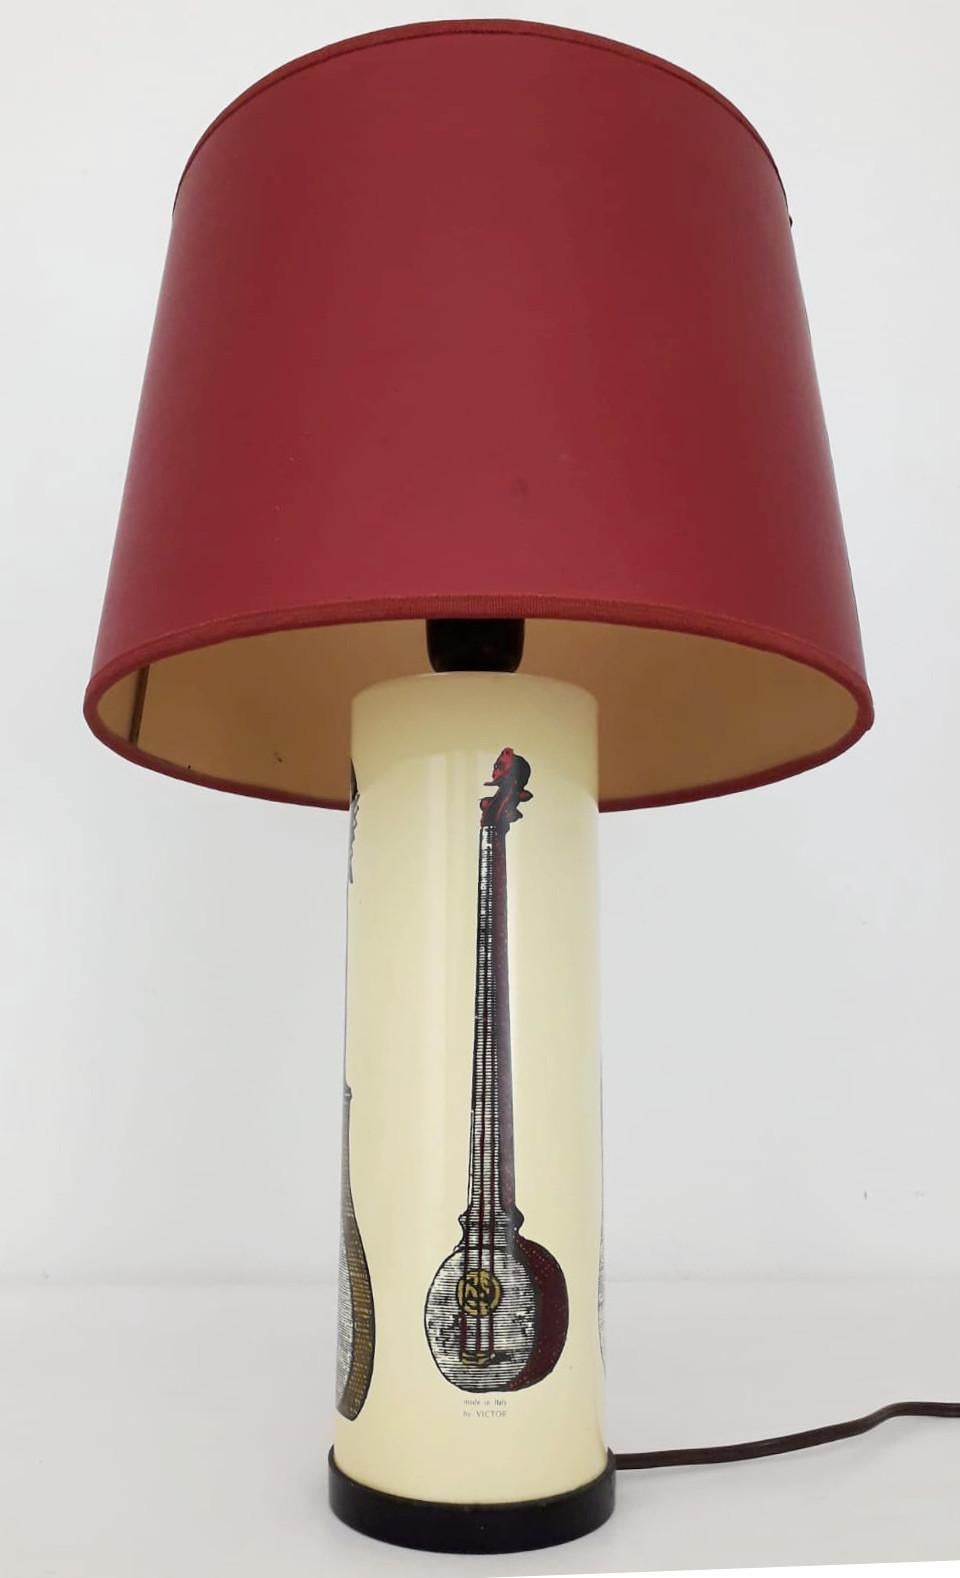 Mid-Century Modern Italian Table Lamp